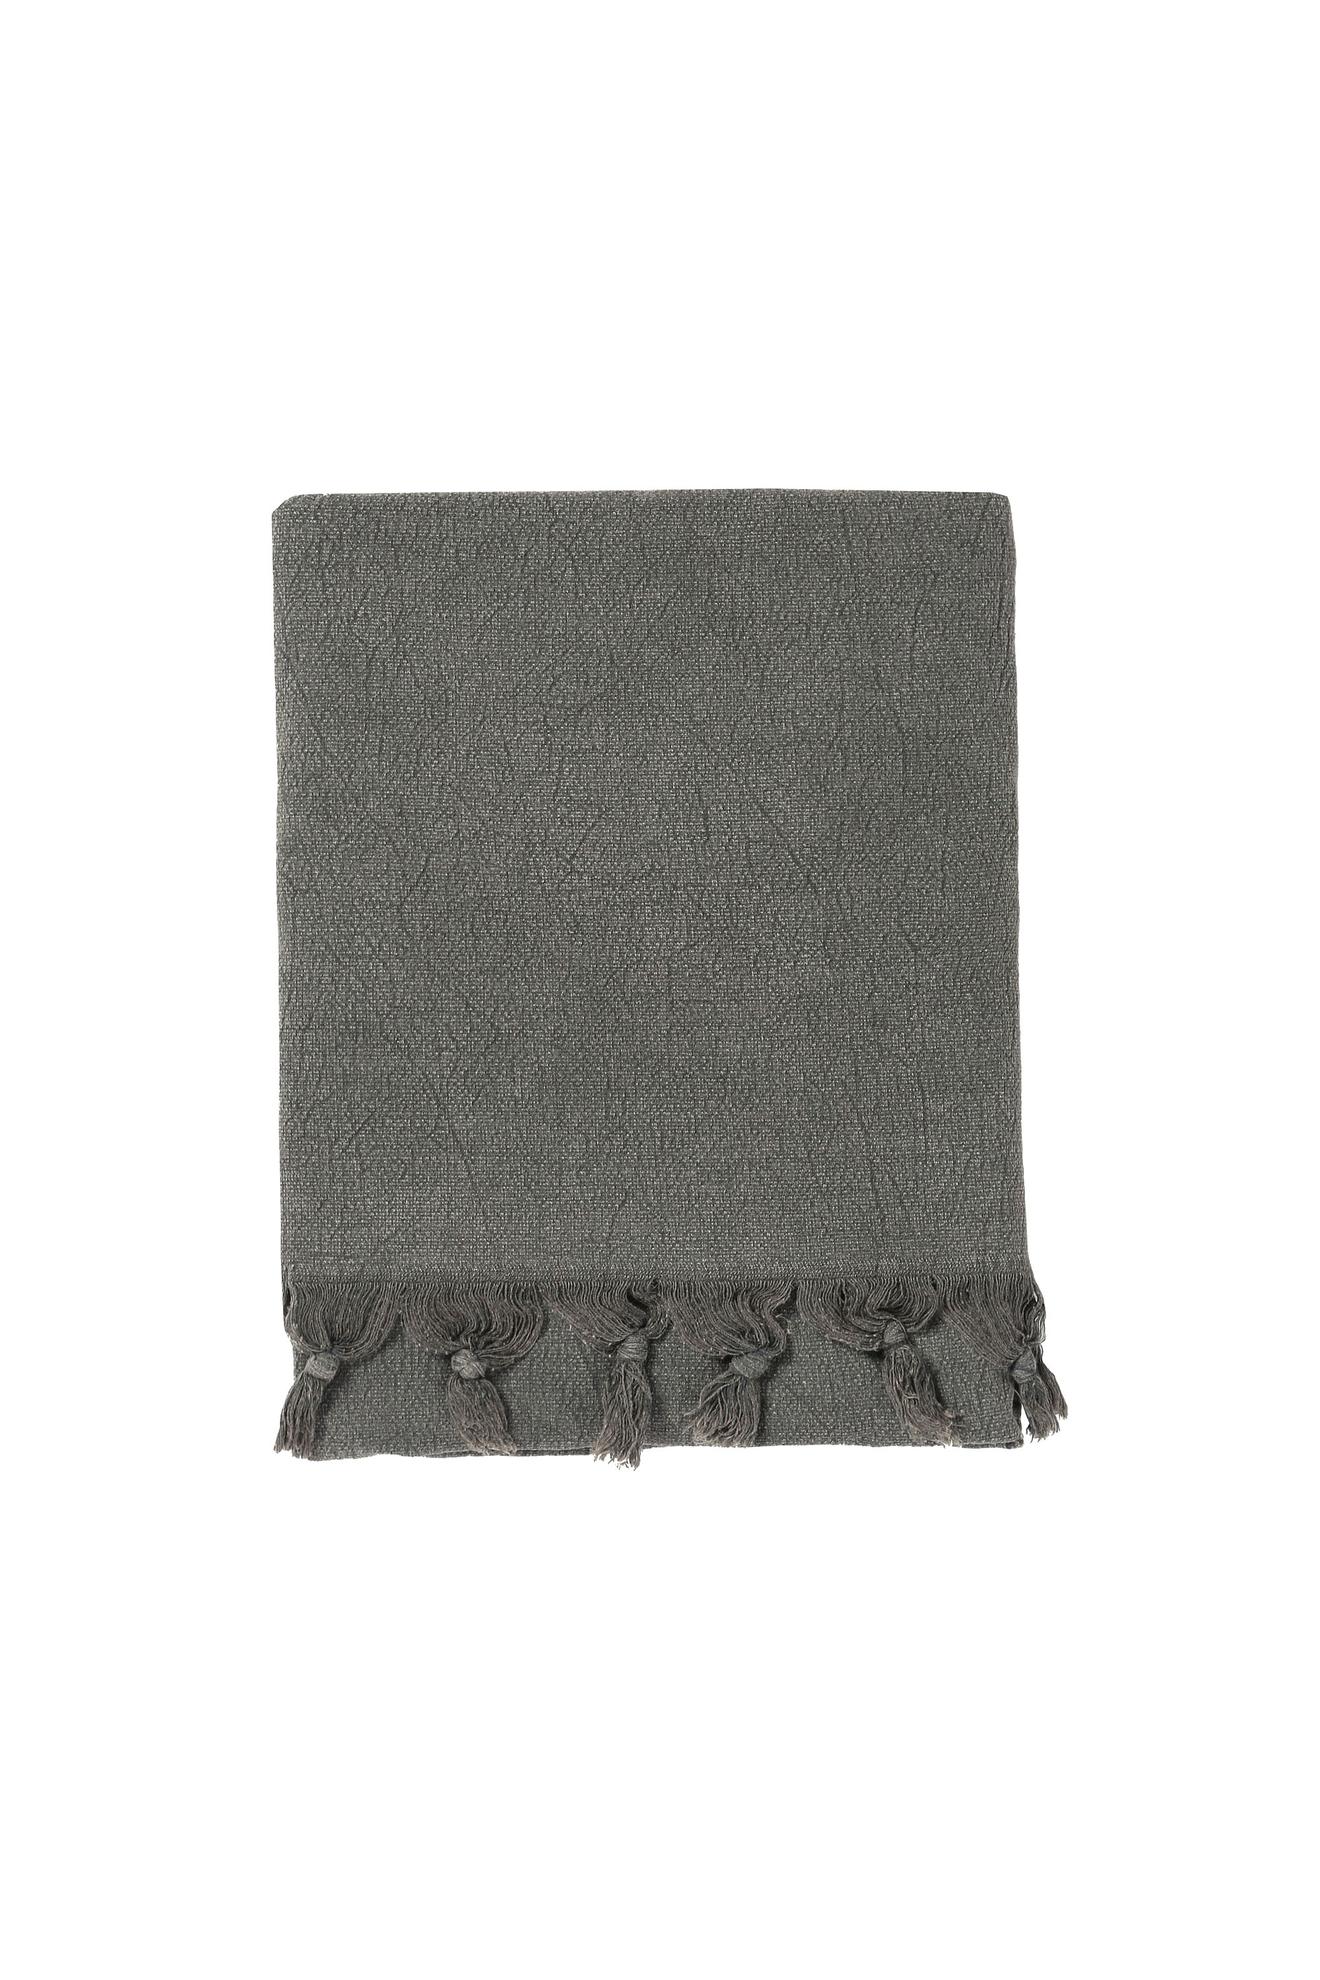 Προσφορά Grey gym towel with fringes 95x150 cm για 30€ σε DIESEL